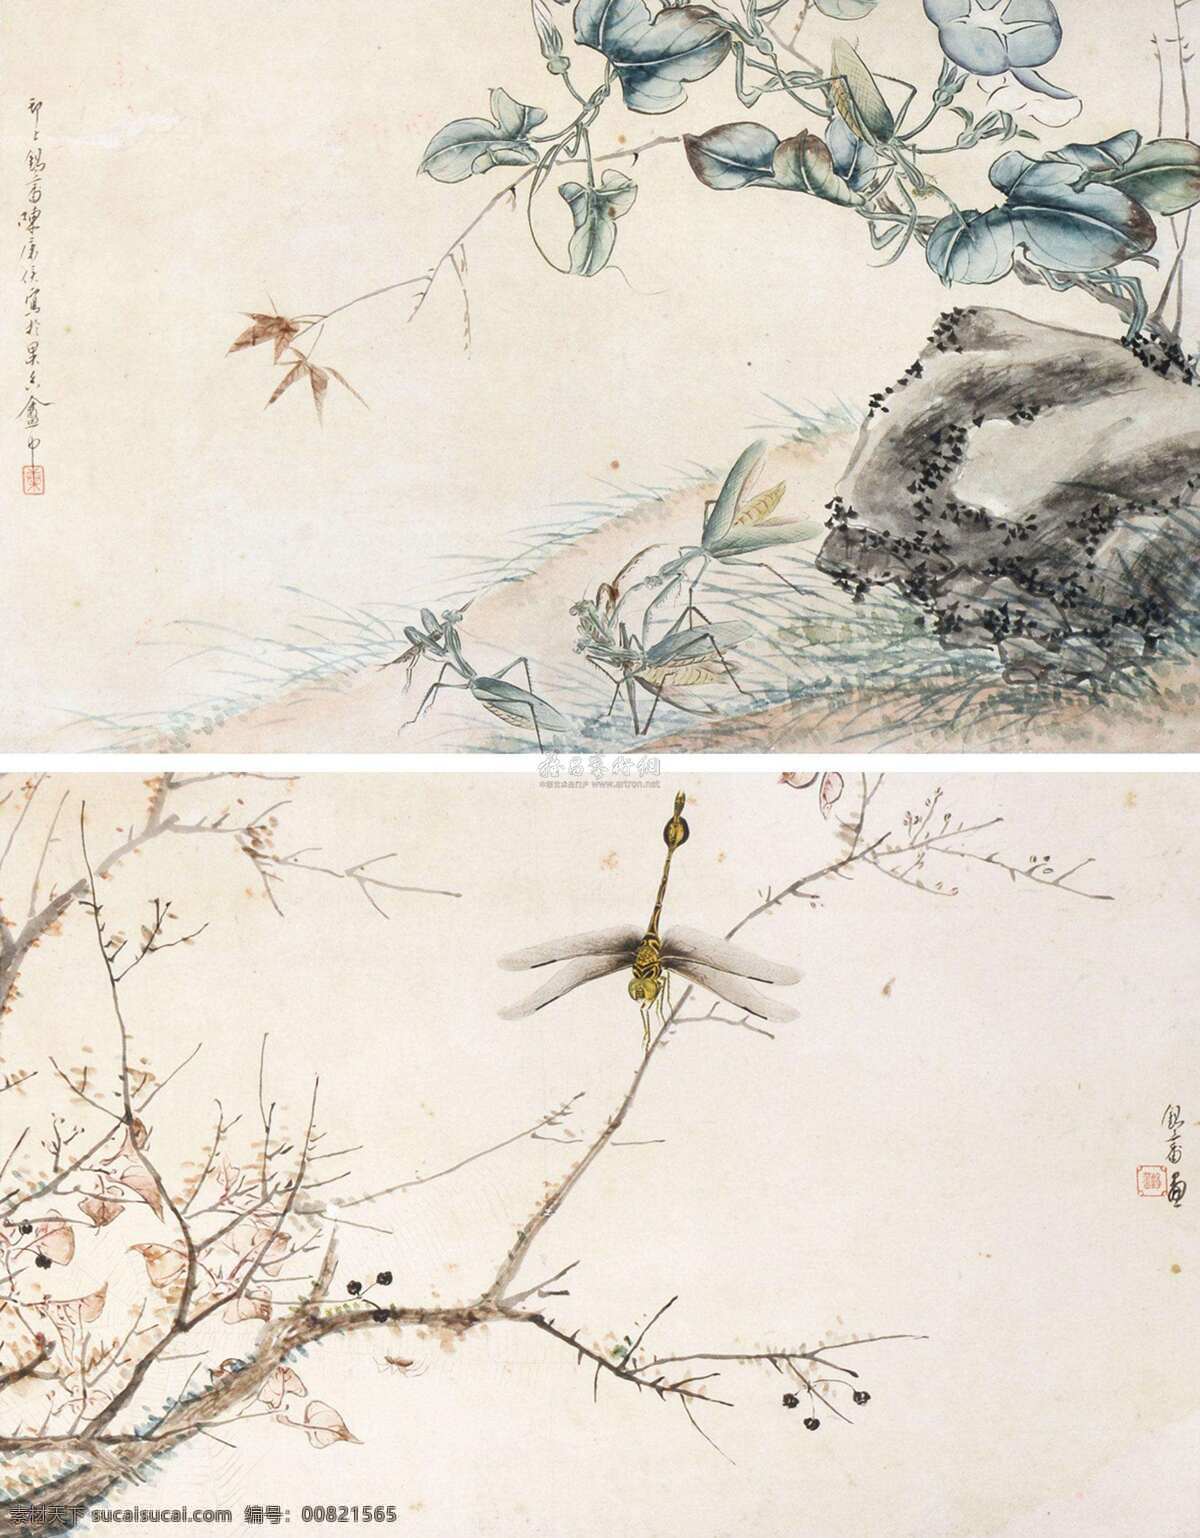 花鸟画 花卉 工笔画 中国画 古画 文化艺术 绘画书法